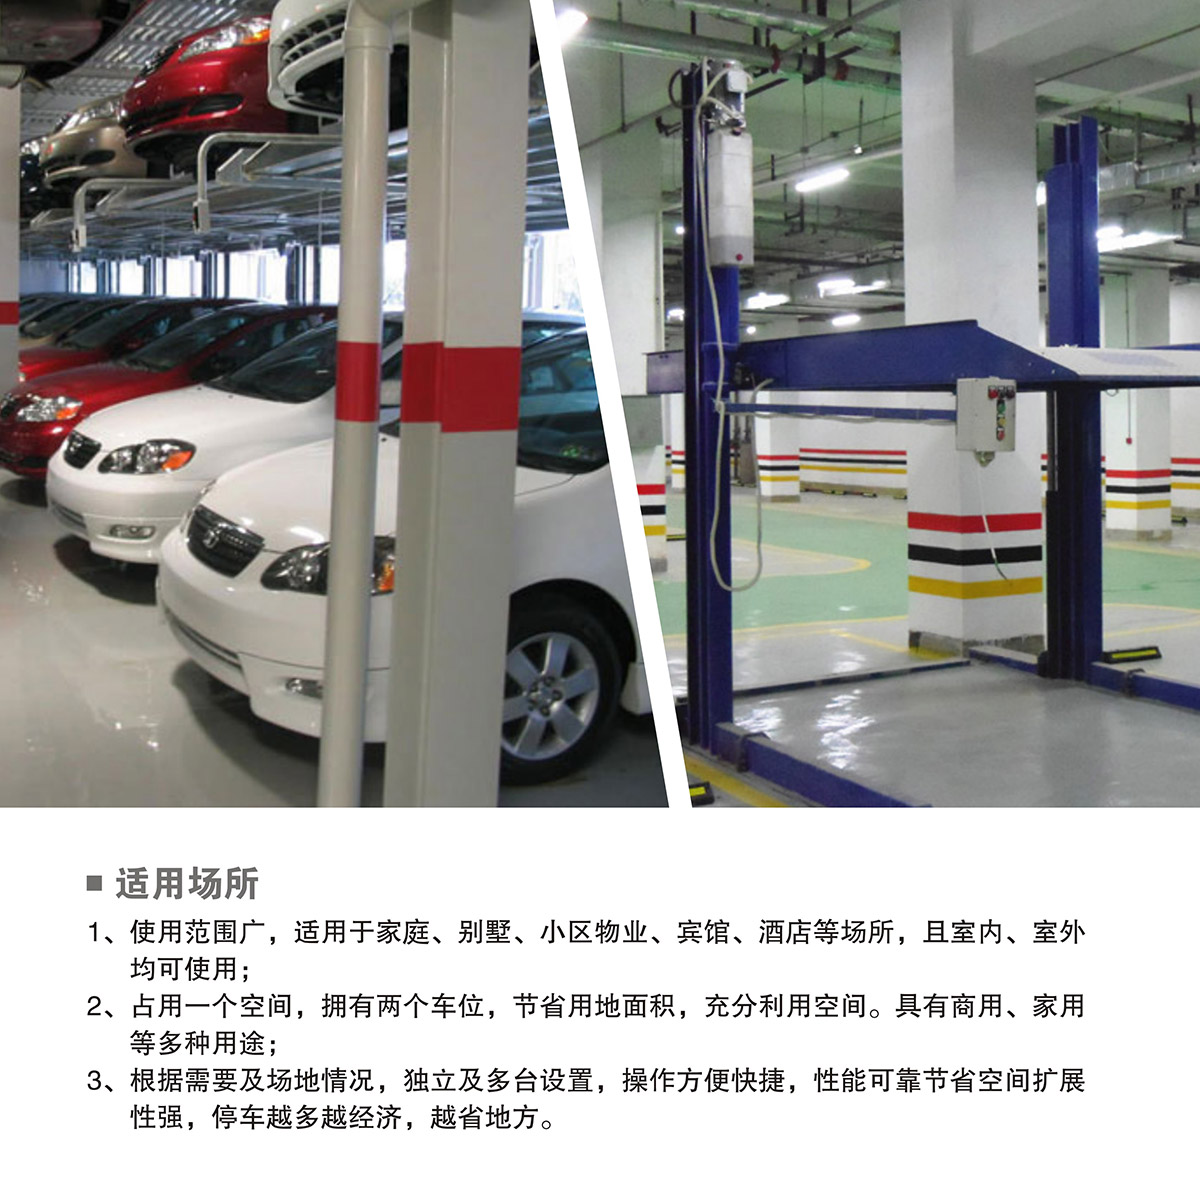 机械停车设备PJS两柱简易升降立体停车适用场所.jpg